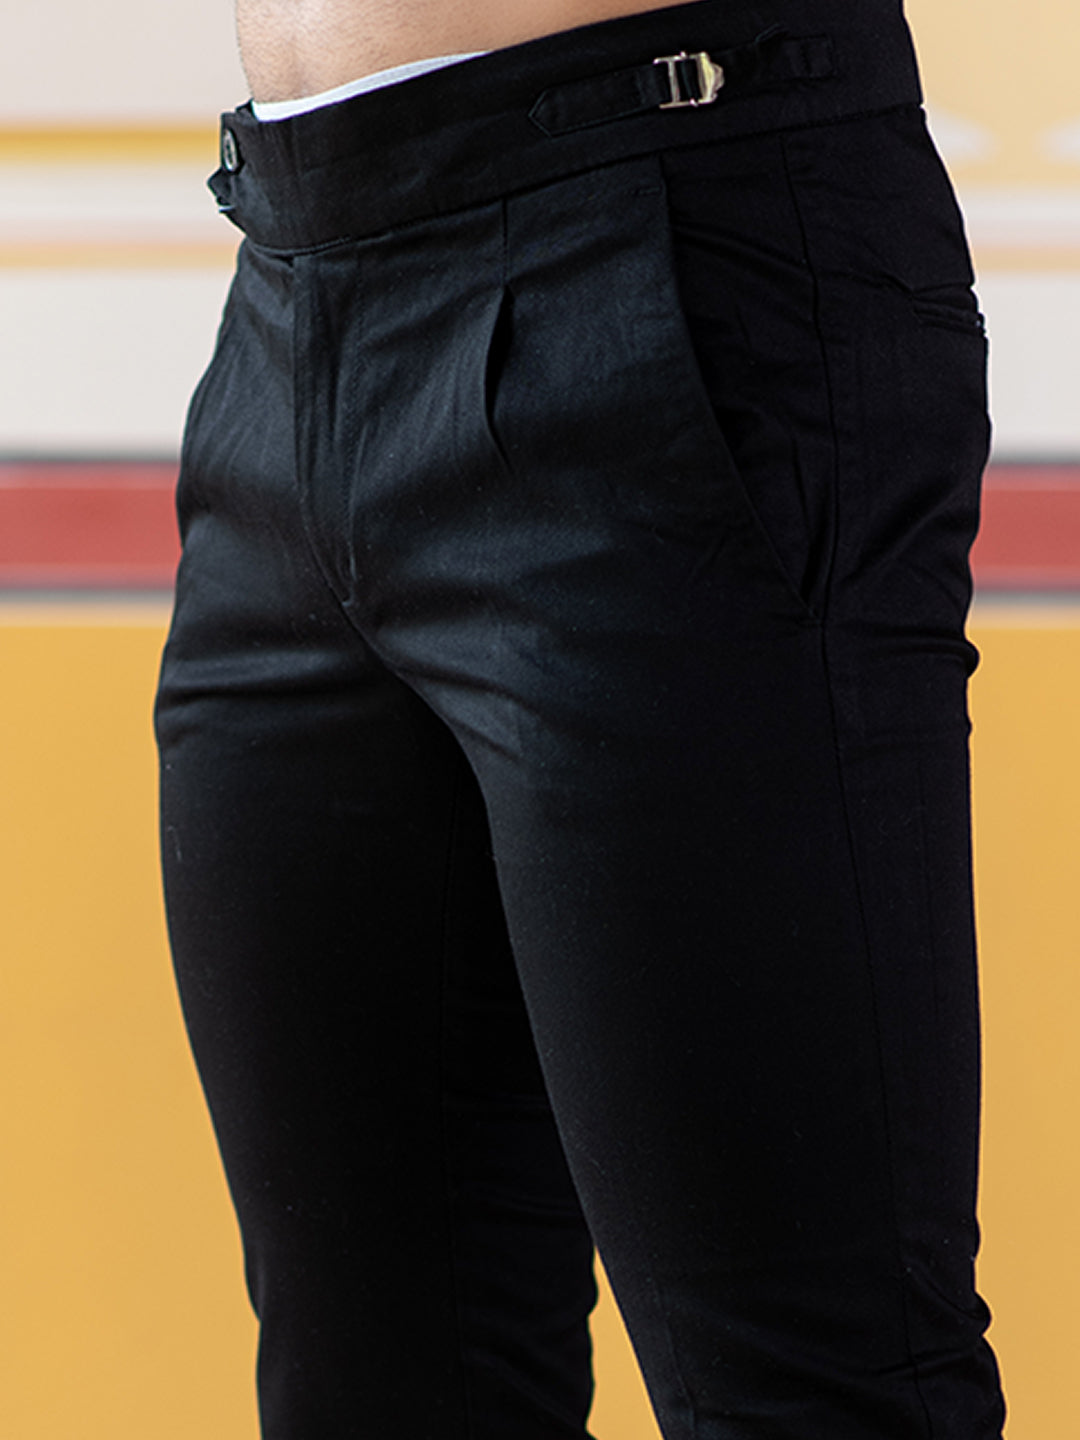 Buy Forever New Black Trousers for Women's Online @ Tata CLiQ